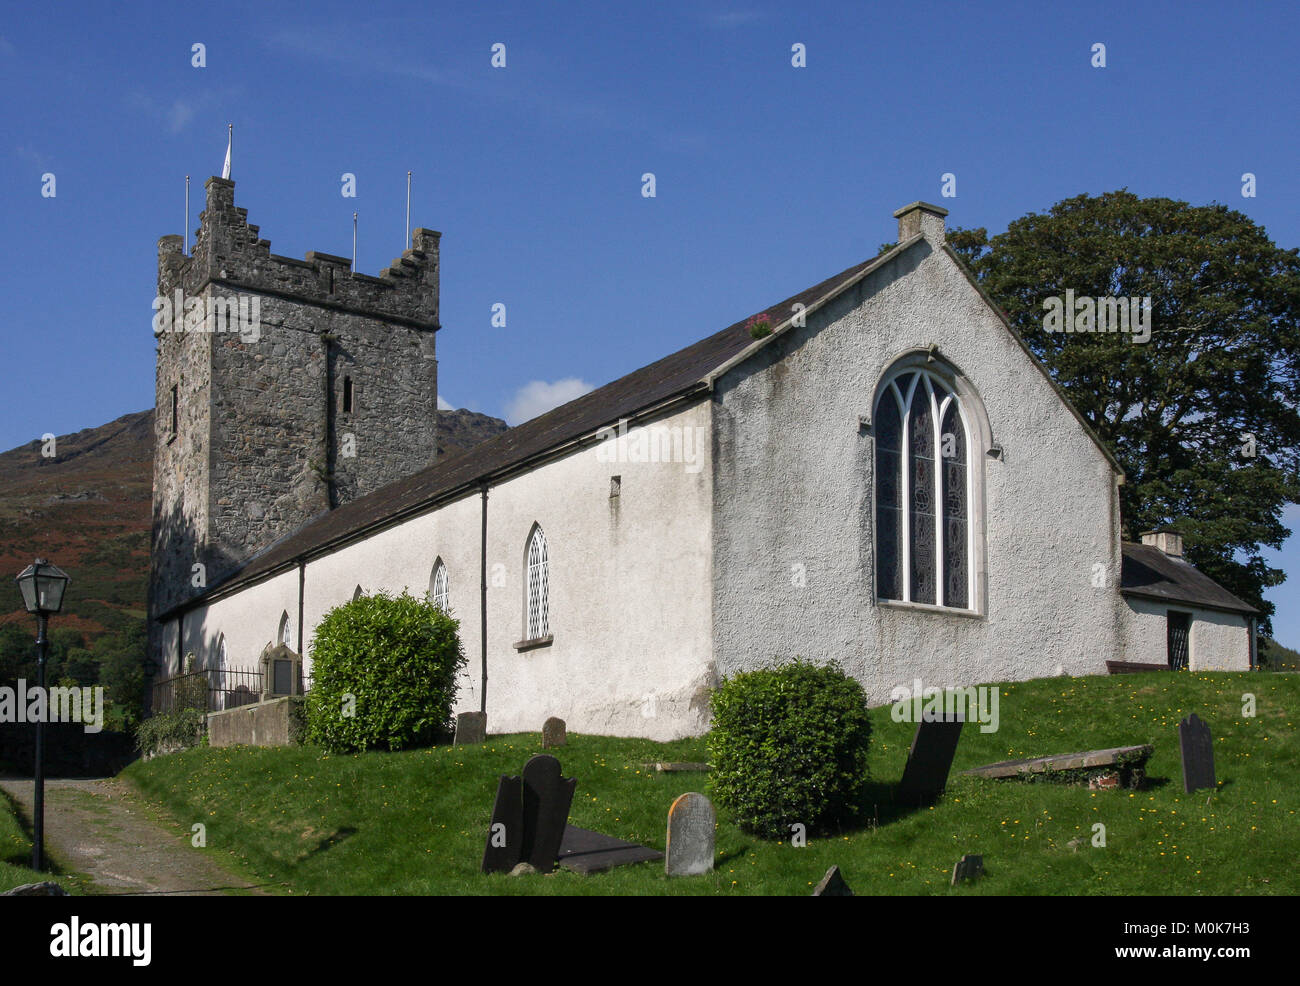 La Sainte Trinité Heritage Centre à Carlingford, comté de Louth Irlande. Une église médiévale restaurée abrite le centre du patrimoine mondial de l'Irlande. Banque D'Images